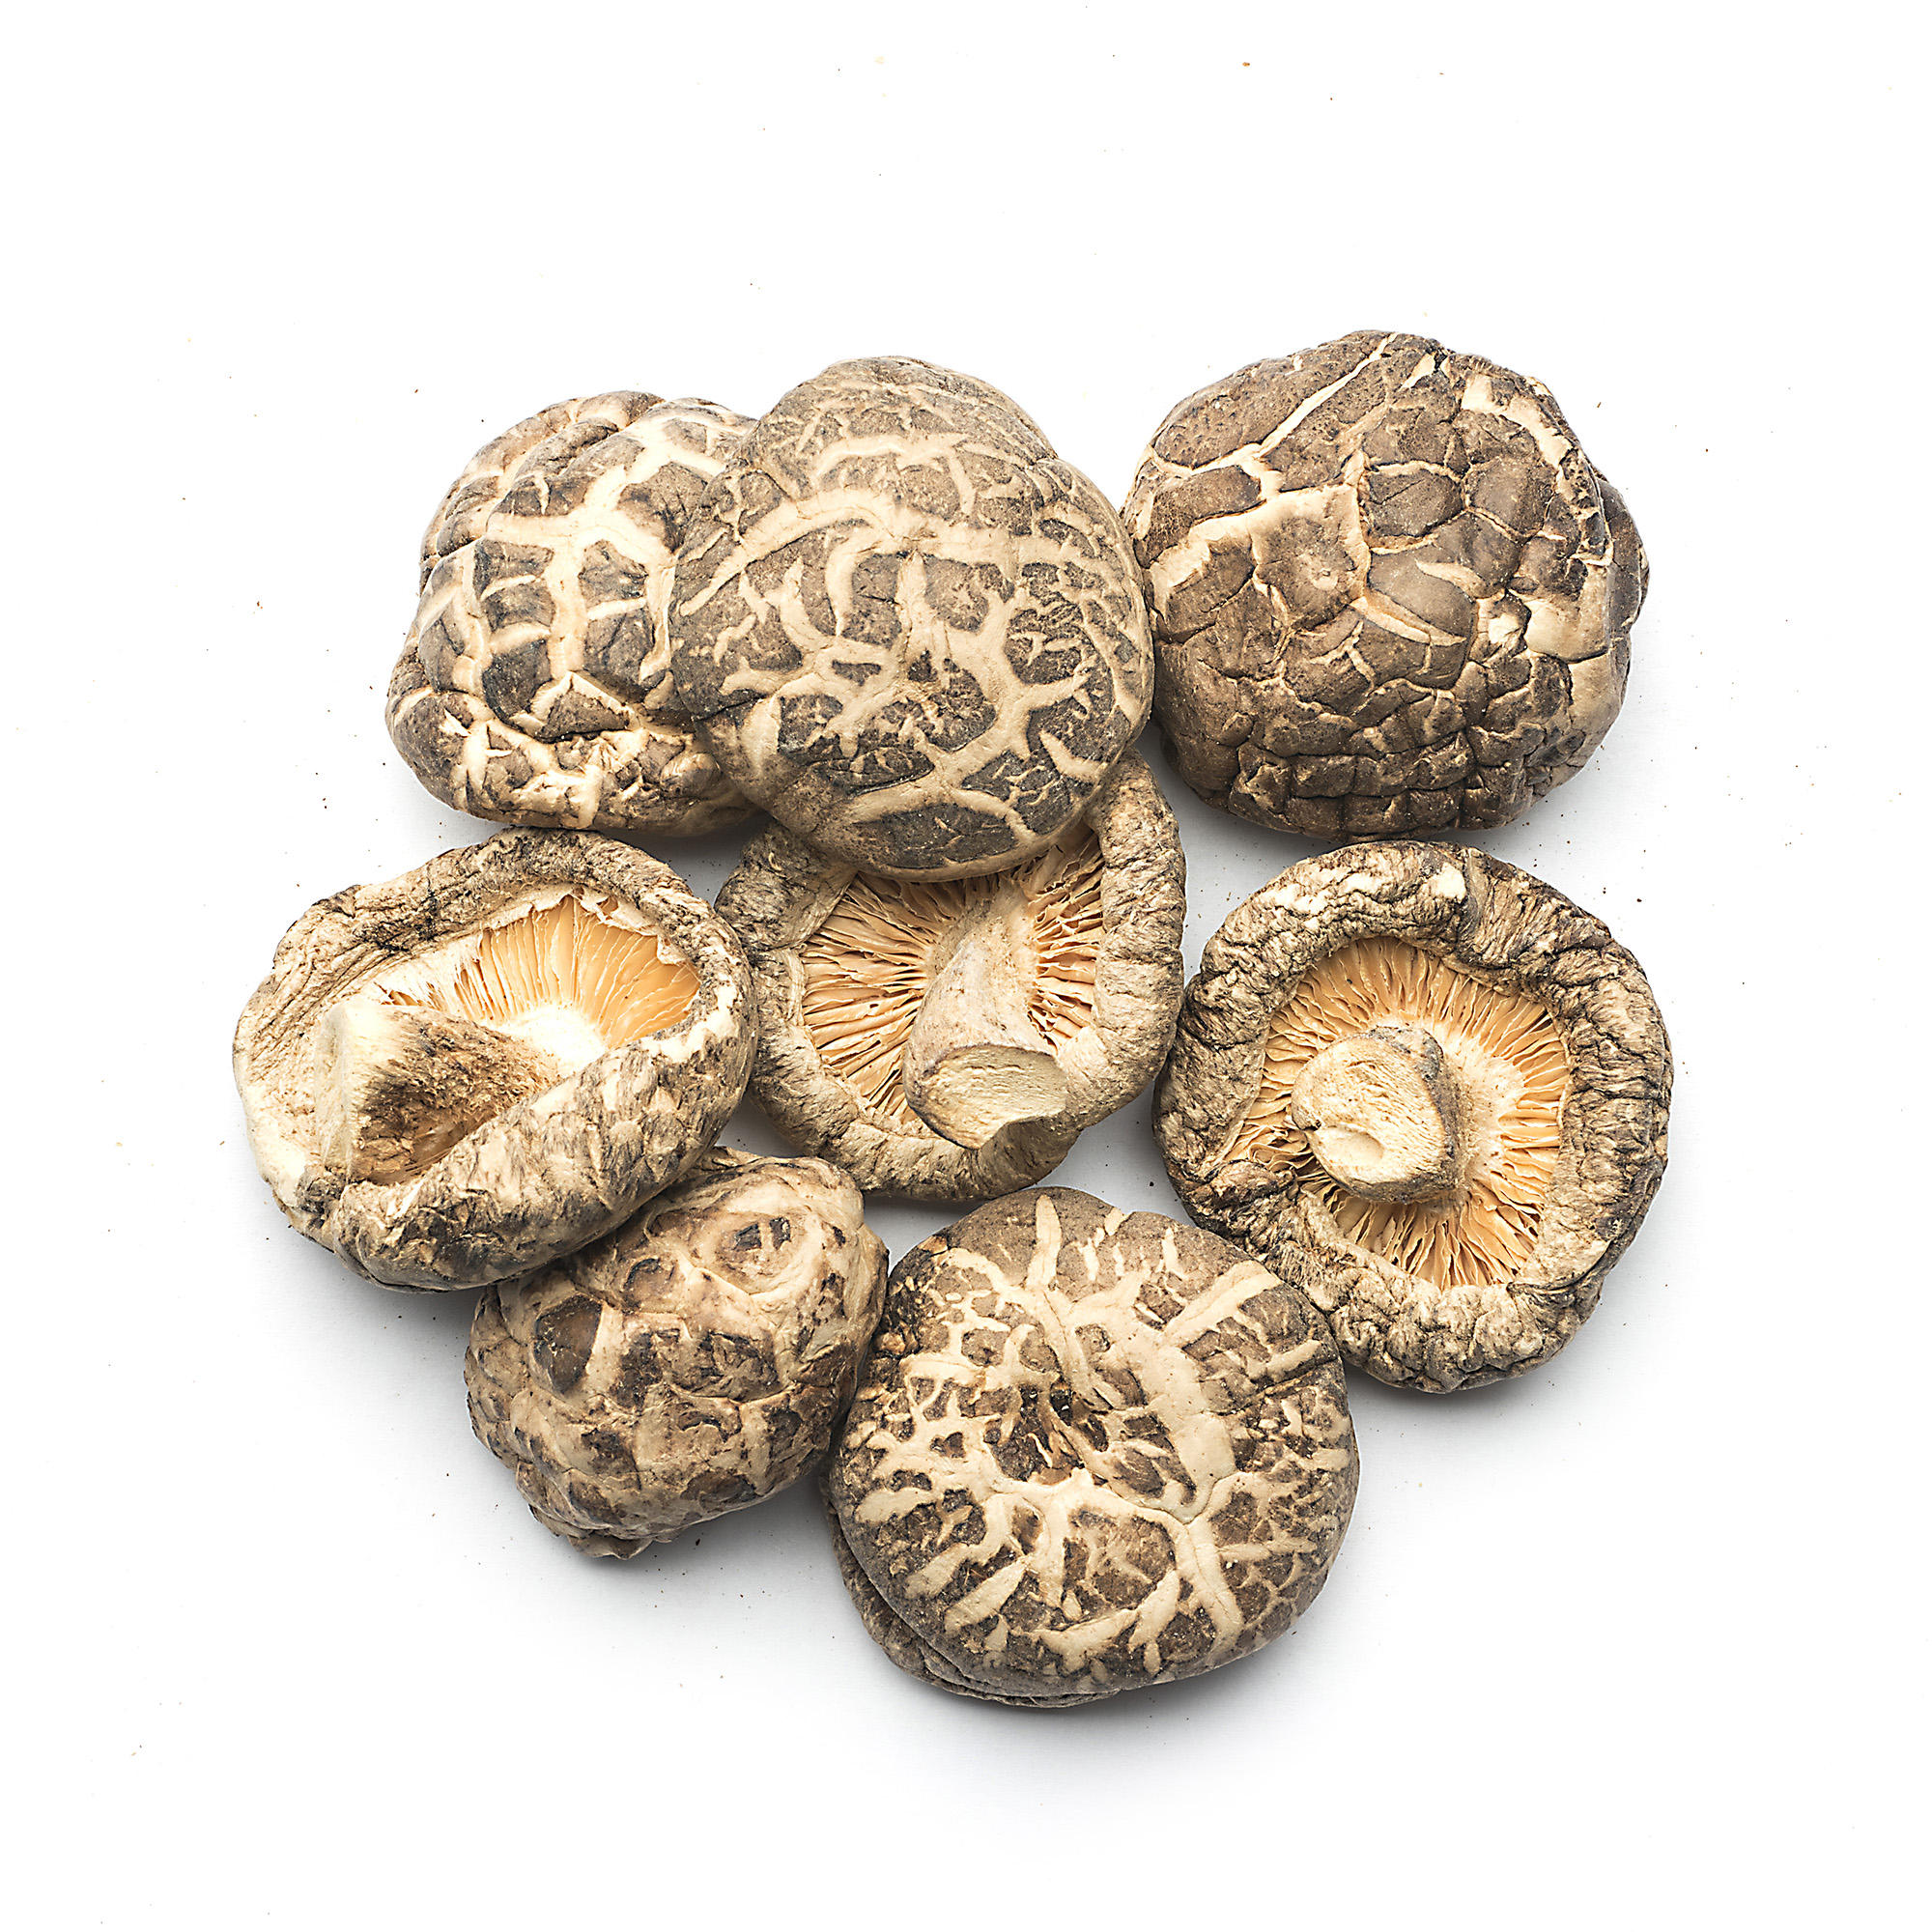 Китайские грибы шиитаке фото